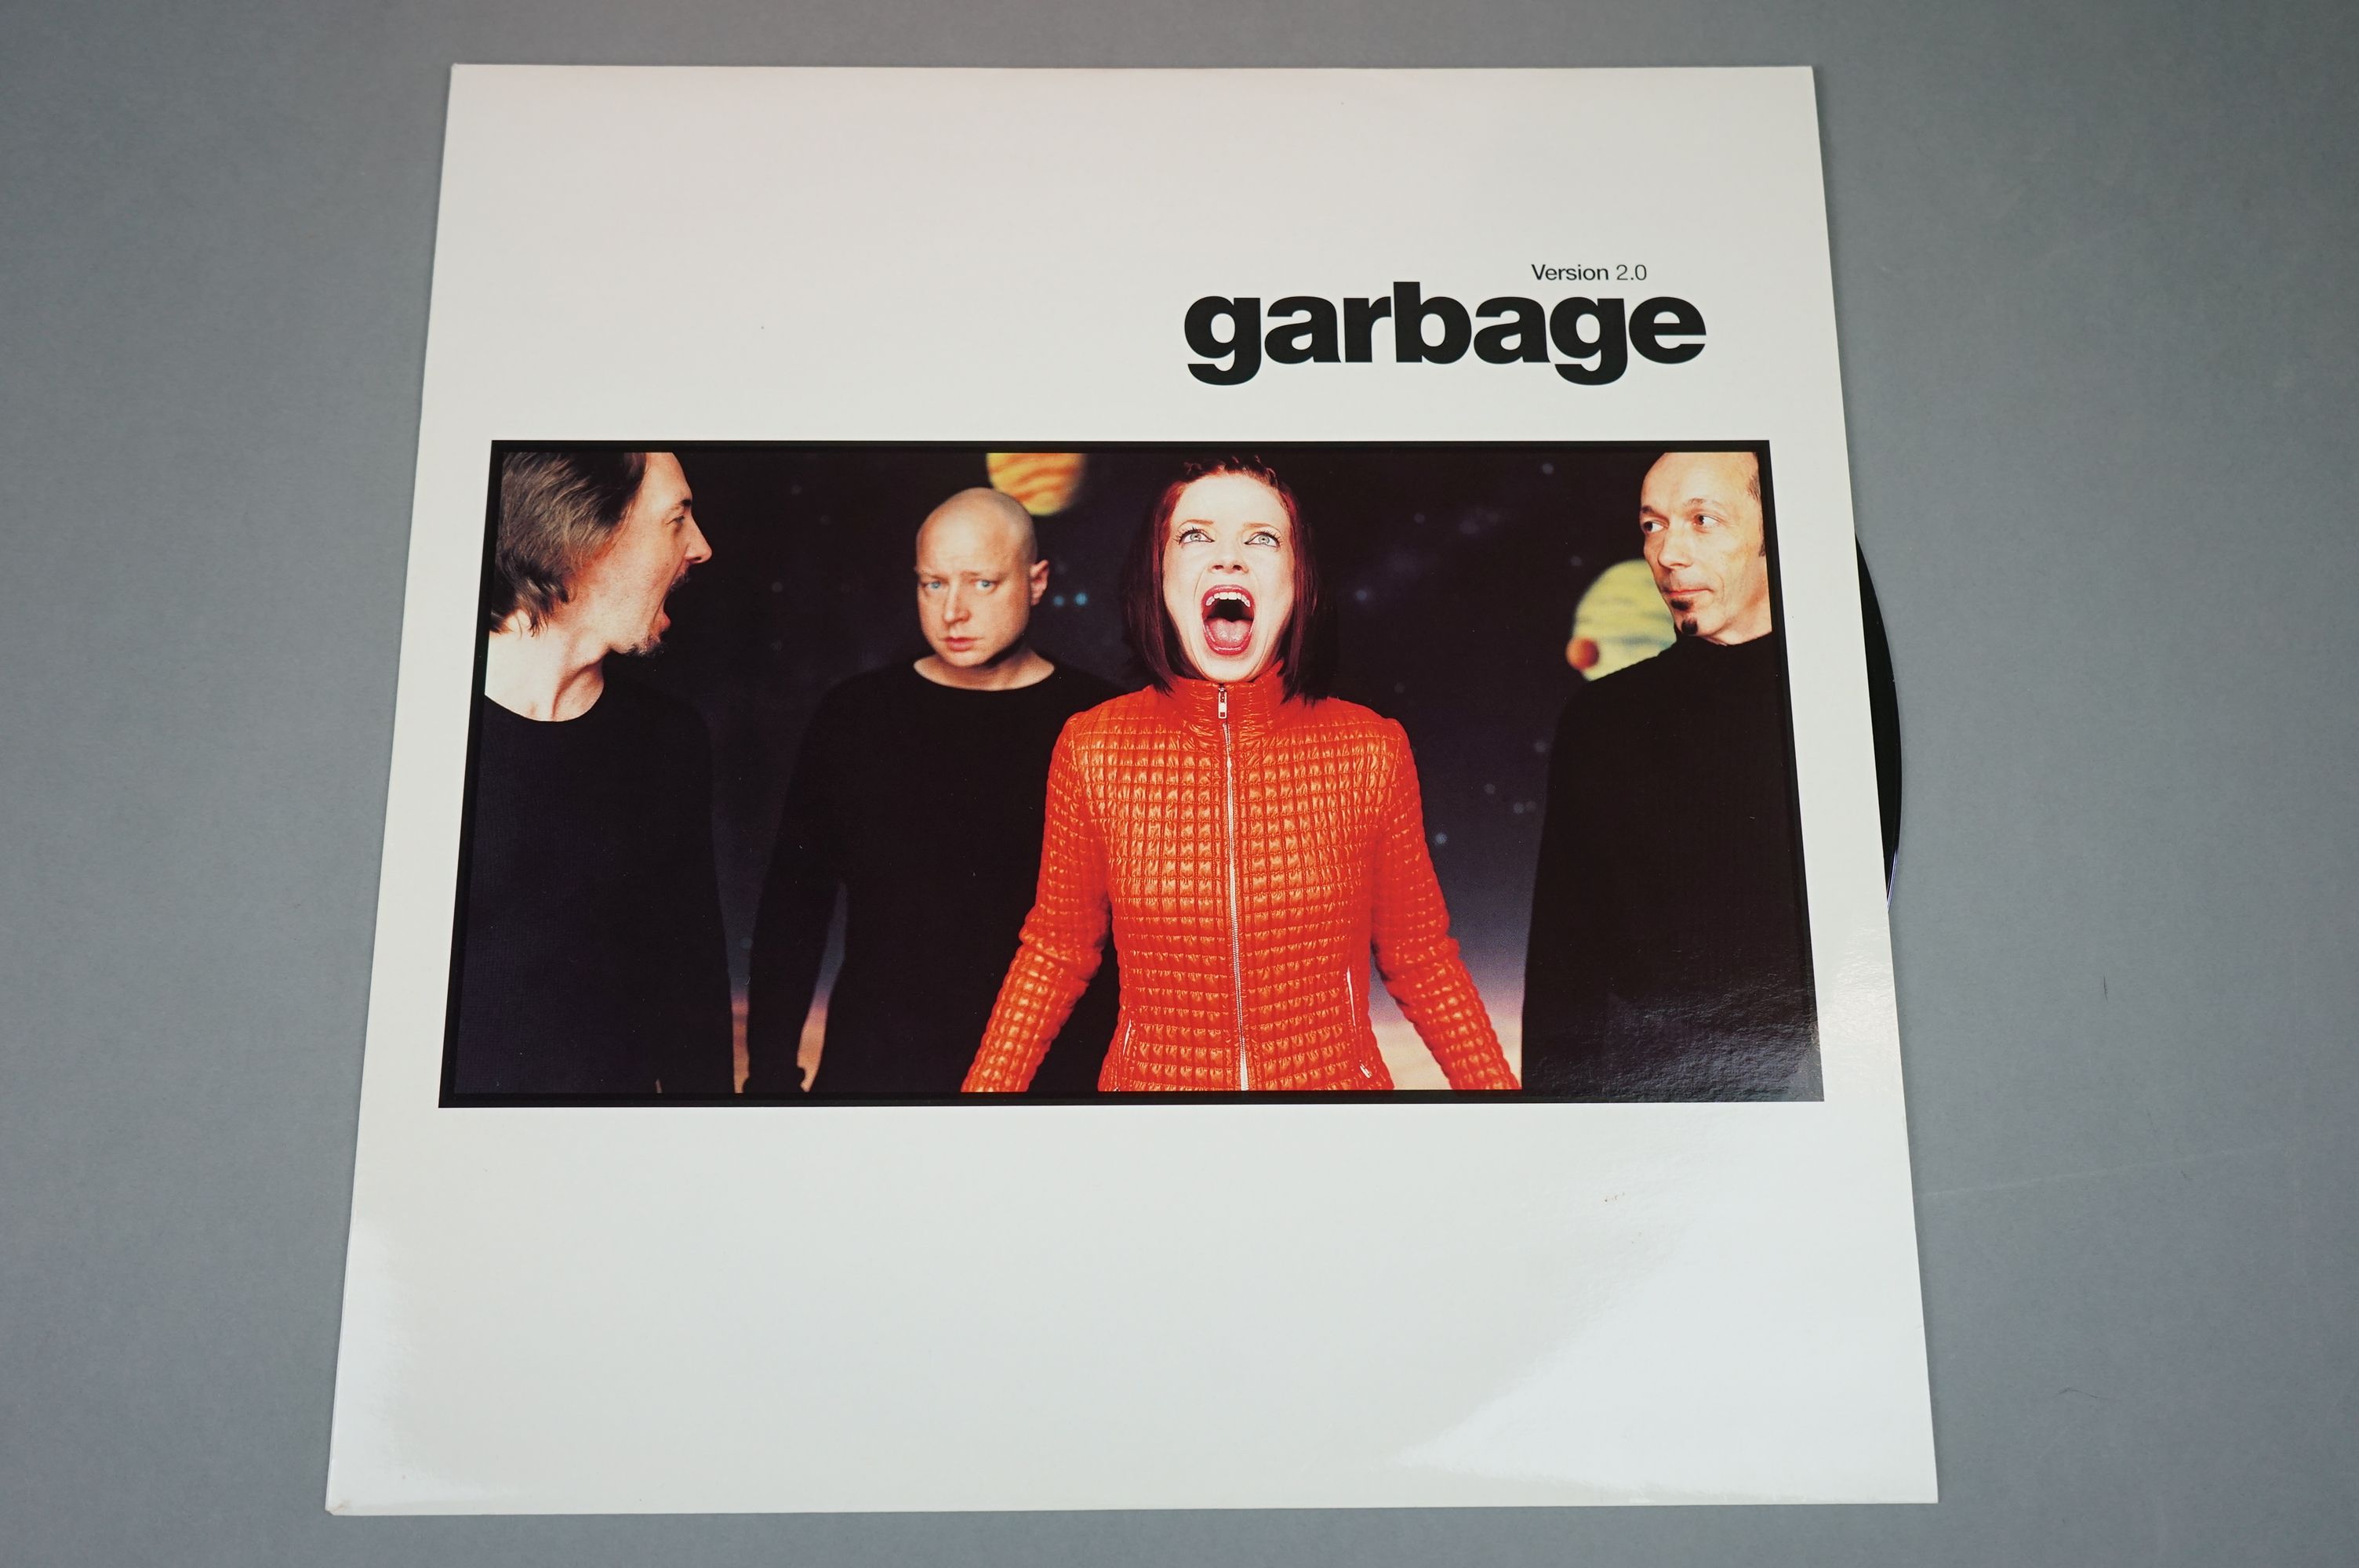 Vinyl - Garbage Version 2.0 LP on Mushroom MUSH29LP, with inner sleeve, sleeve vg+, vinyl ex - Image 3 of 8